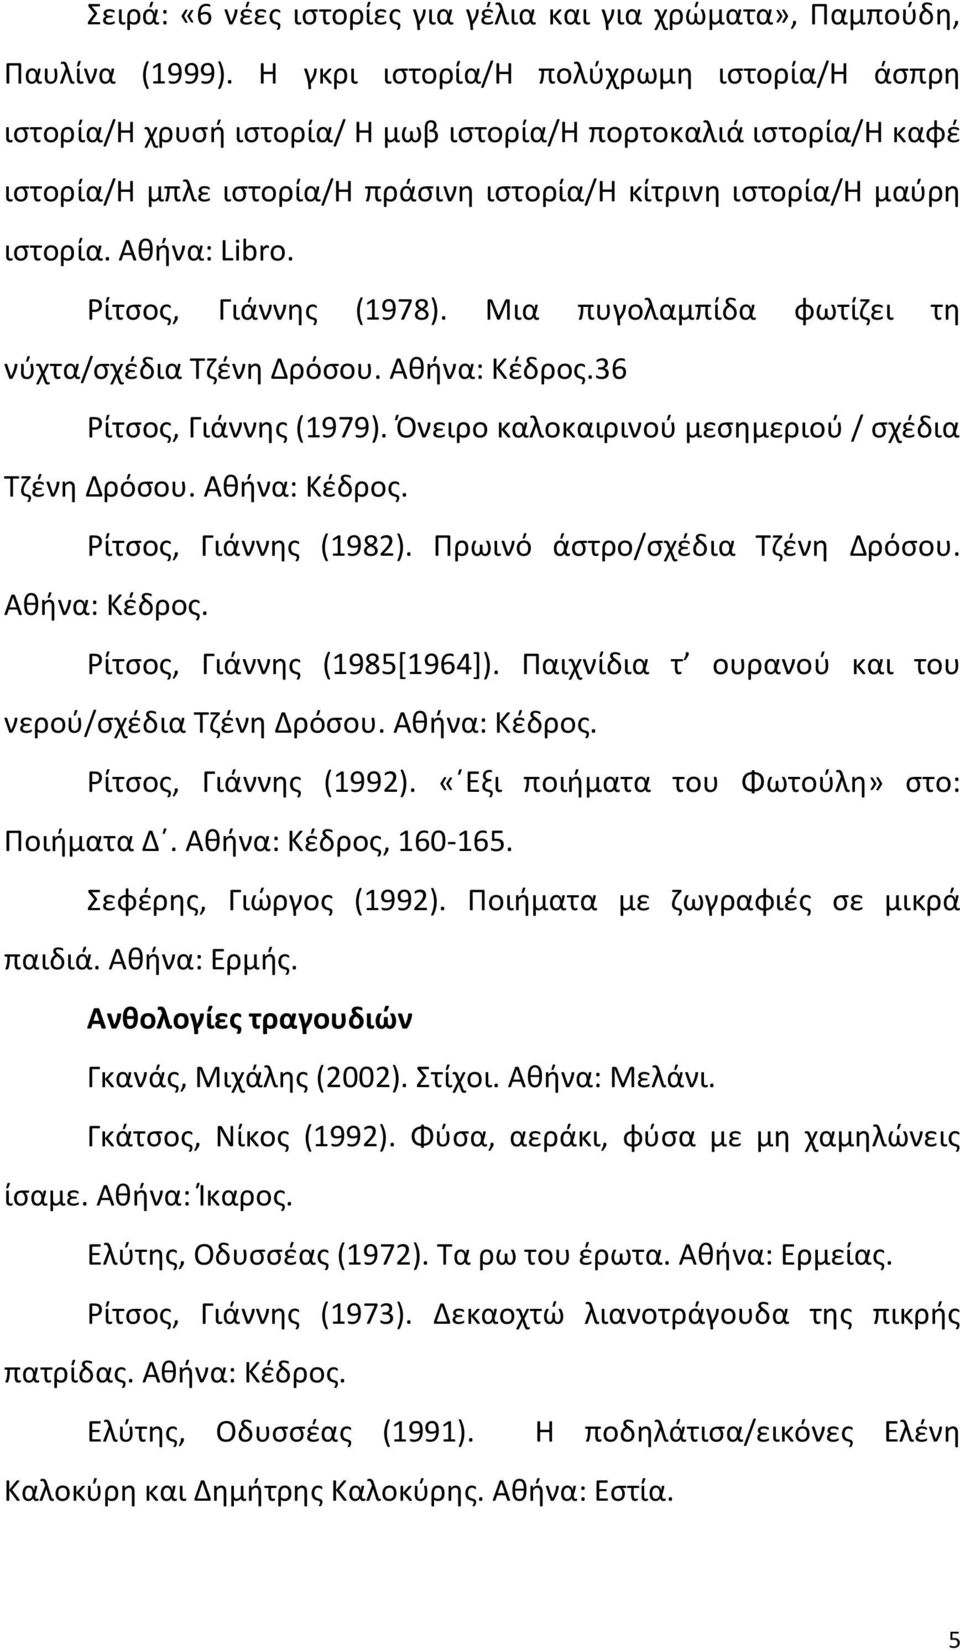 Ρίτσος, Γιάννης (1978). Μια πυγολαμπίδα φωτίζει τη νύχτα/σχέδια Τζένη Δρόσου. Αθήνα: Κέδρος.36 Ρίτσος, Γιάννης (1979). Όνειρο καλοκαιρινού μεσημεριού / σχέδια Τζένη Δρόσου. Αθήνα: Κέδρος. Ρίτσος, Γιάννης (1982).